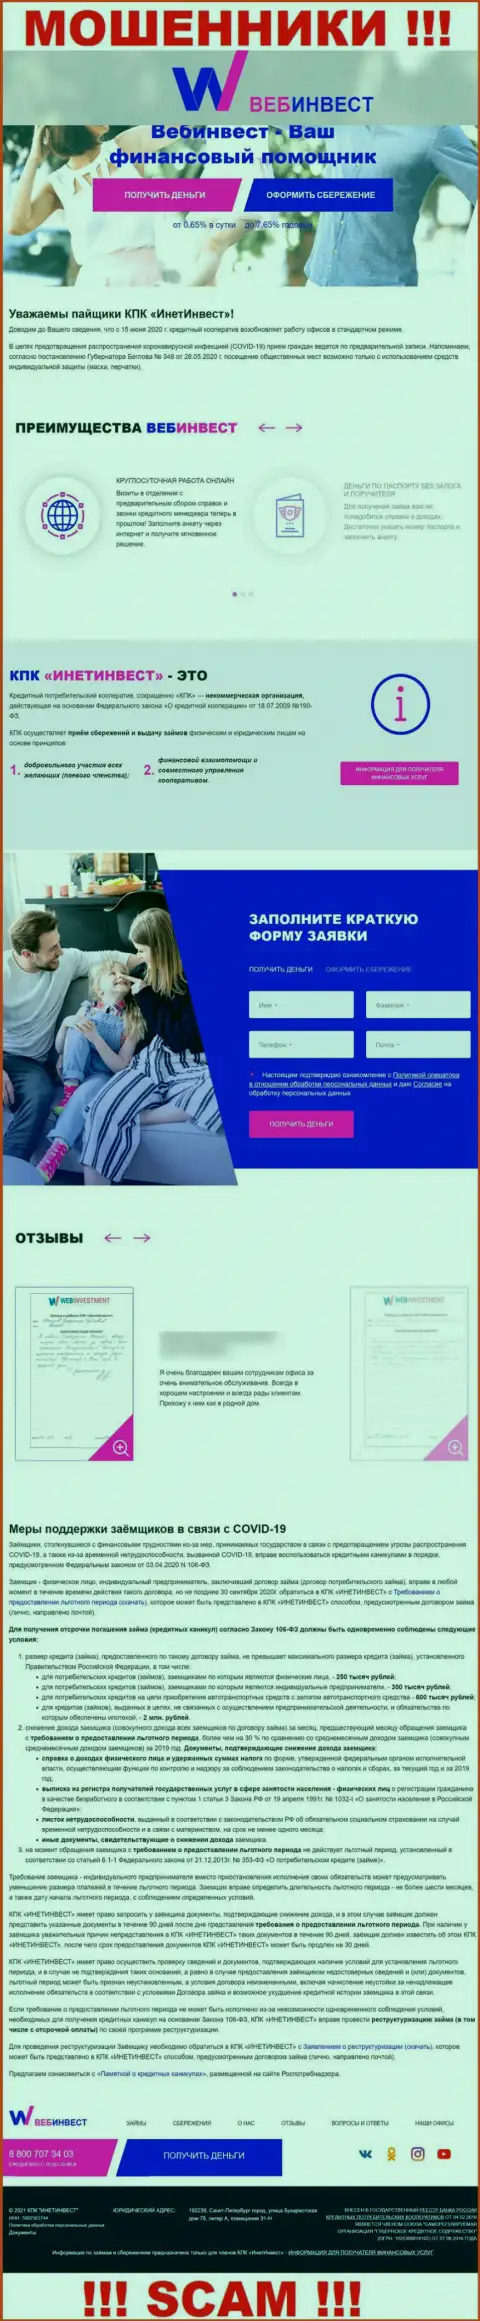 WebInvestment Ru - это официальный сайт internet-разводил КПК ИнетИнвест